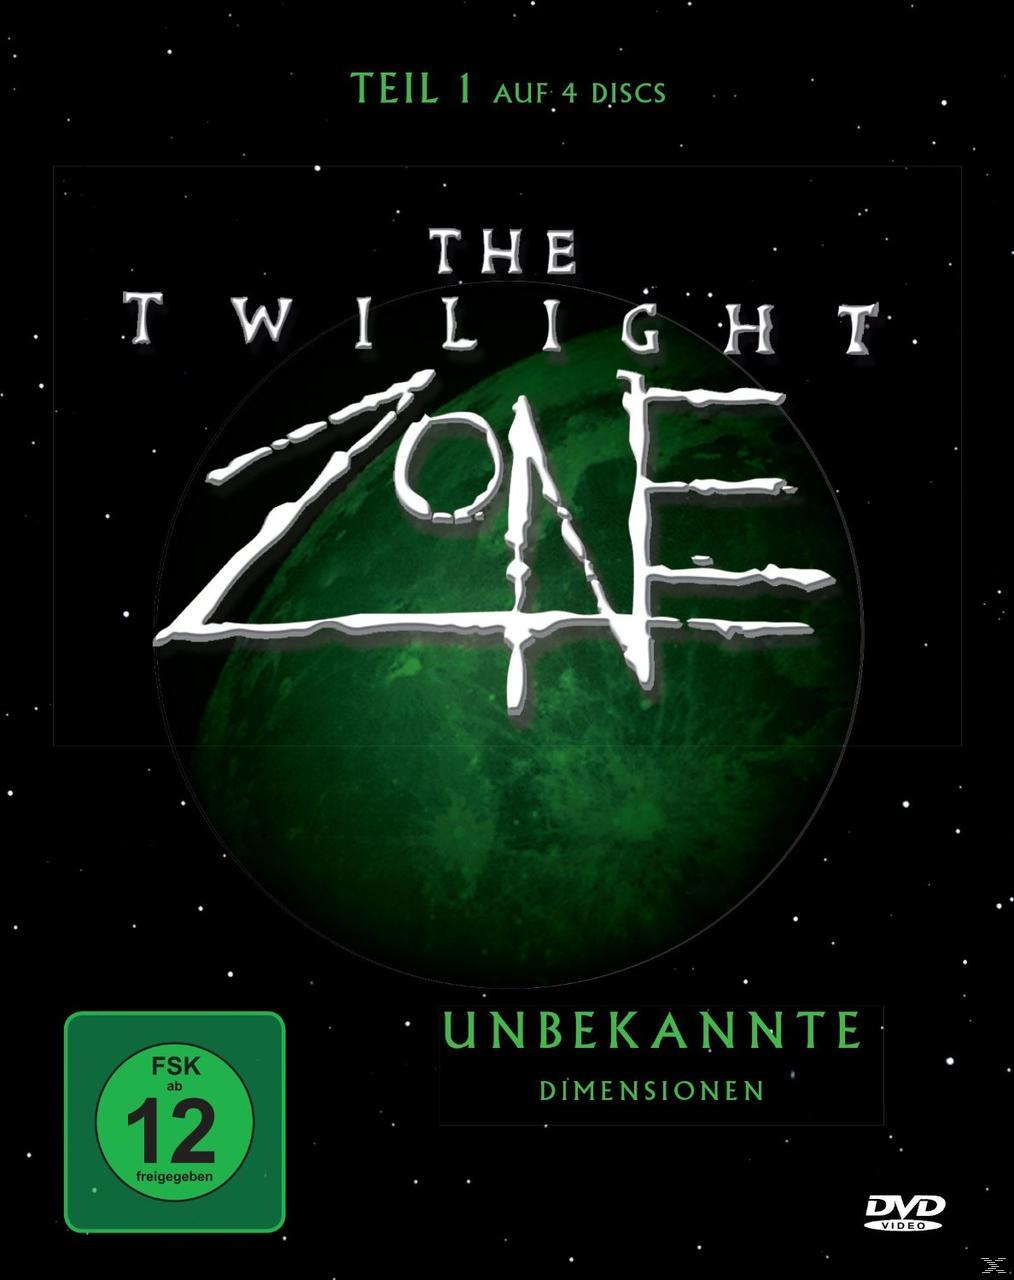 1 Dimensionen Twilight DVD Zone The - Unbekannte